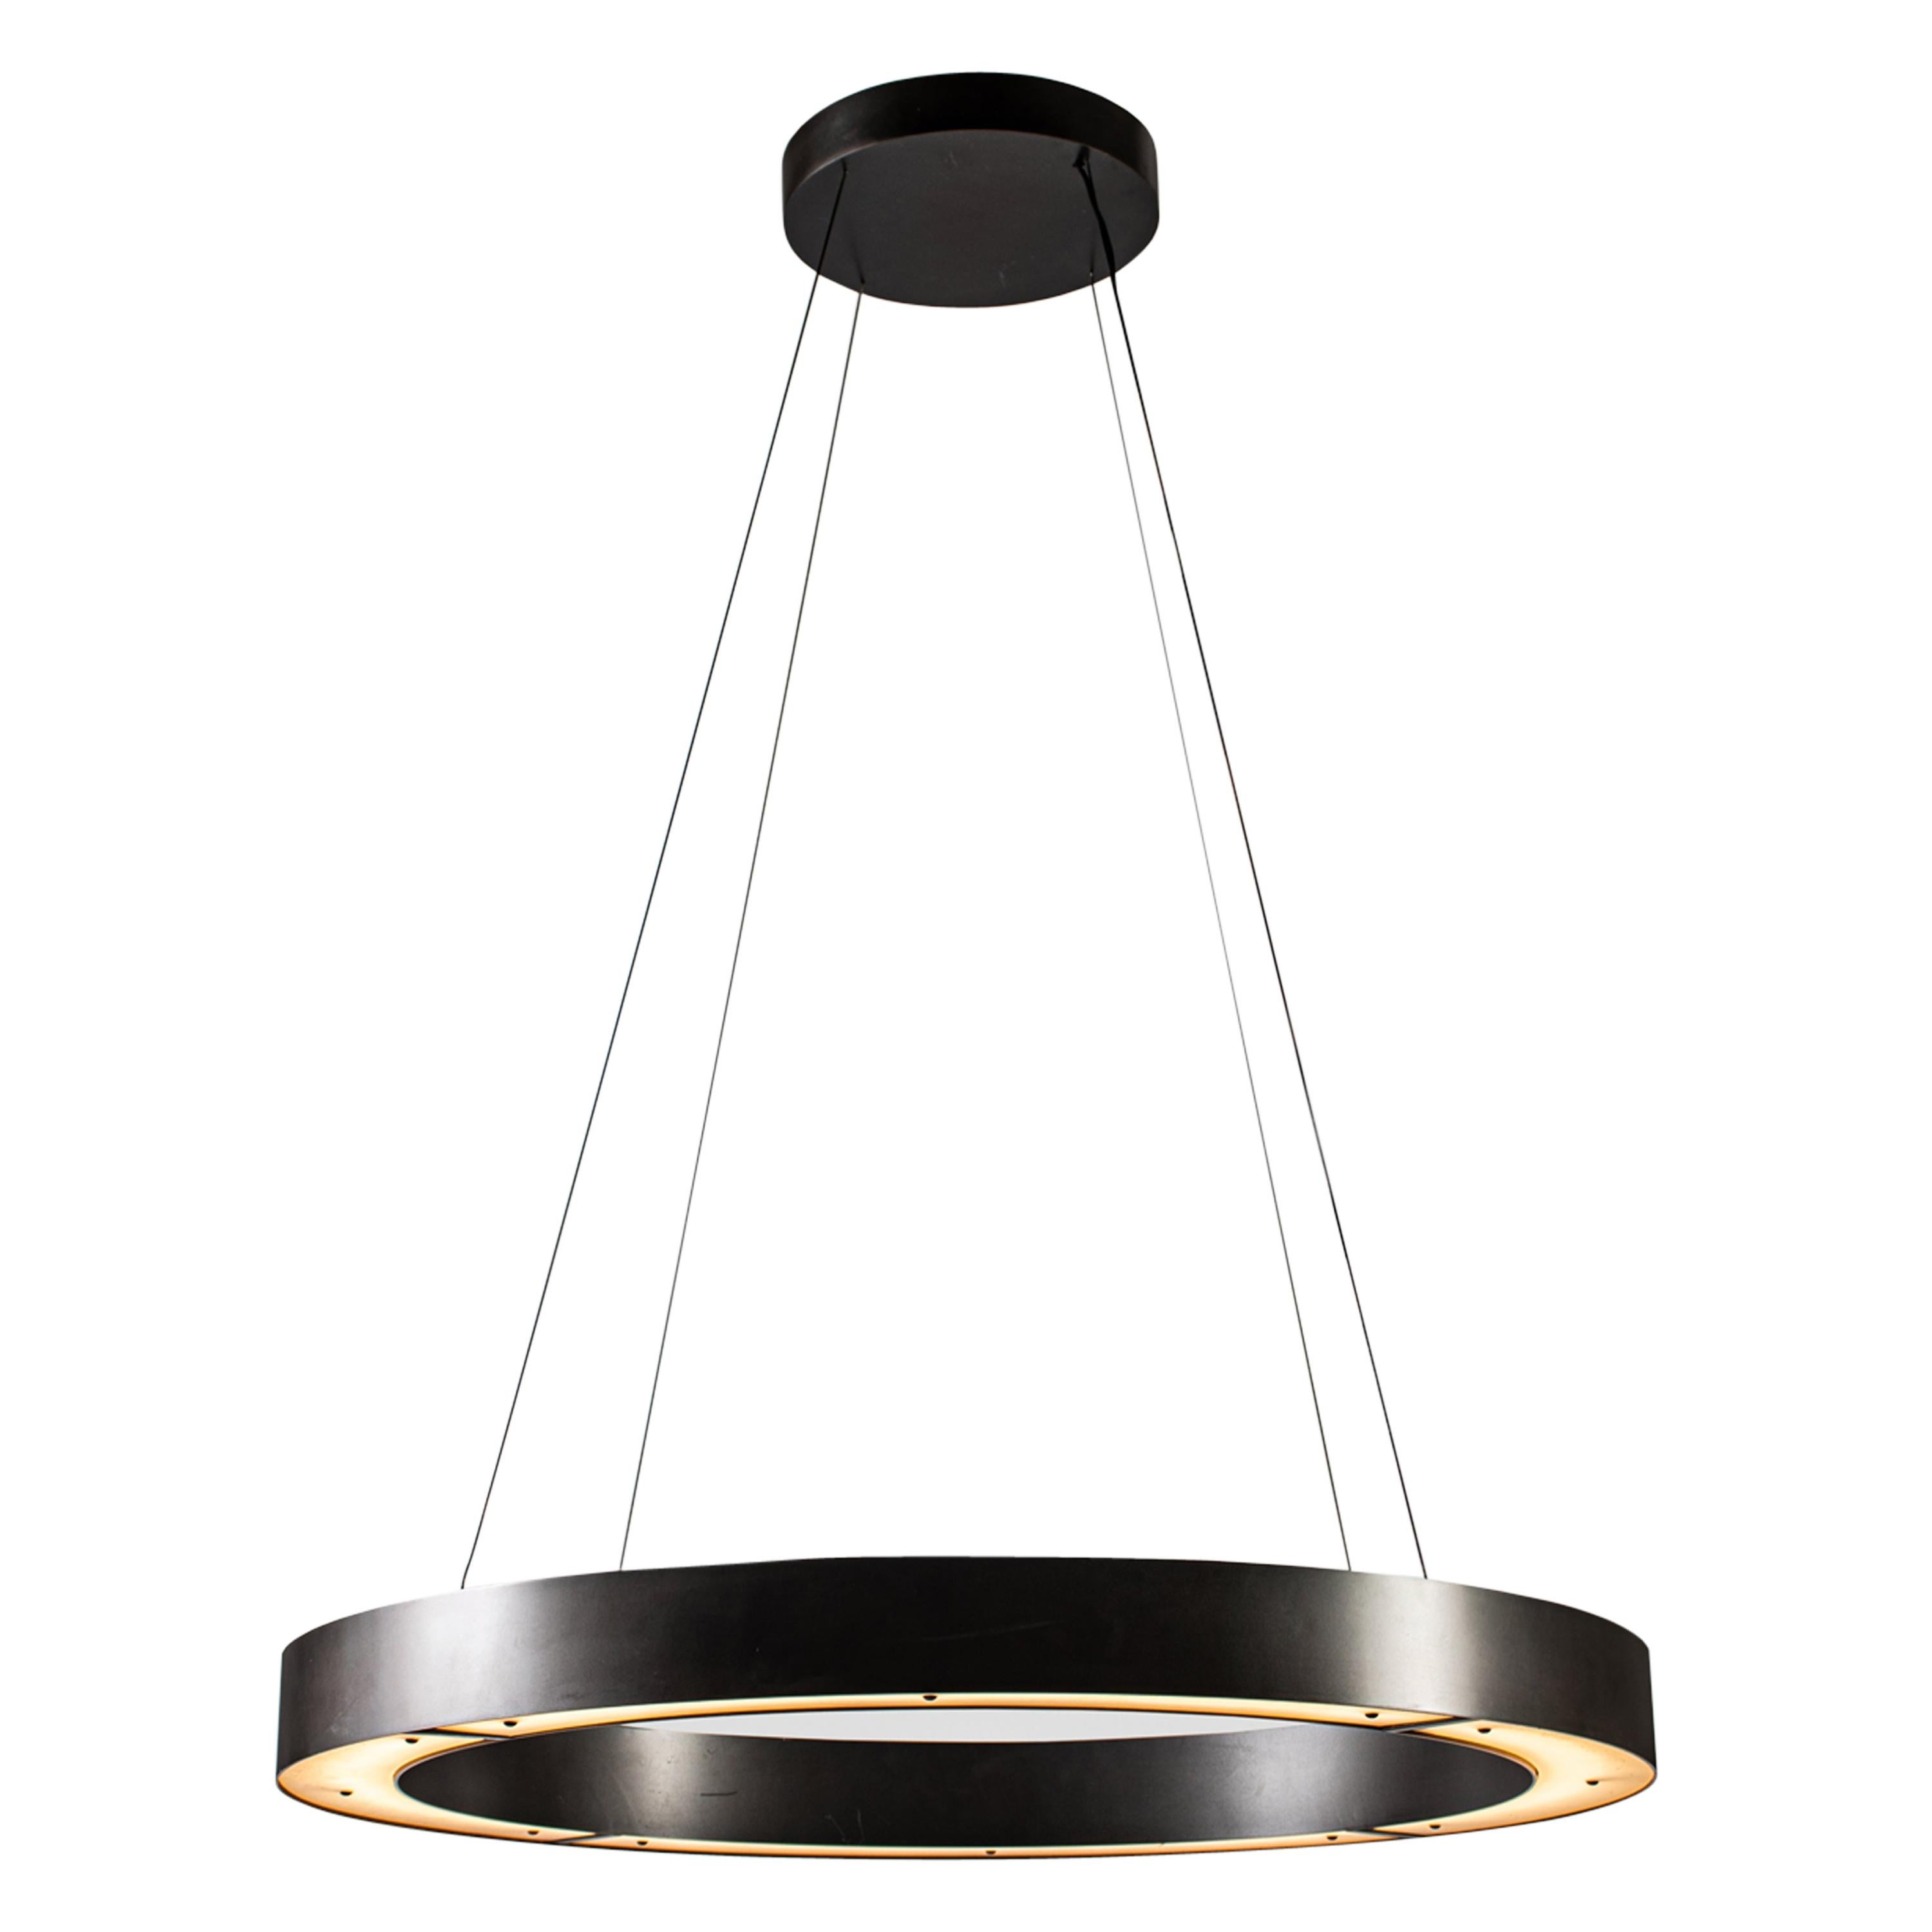 RENG, Hilo II, Forged Steel, Modernist Suspension Ring LED Light